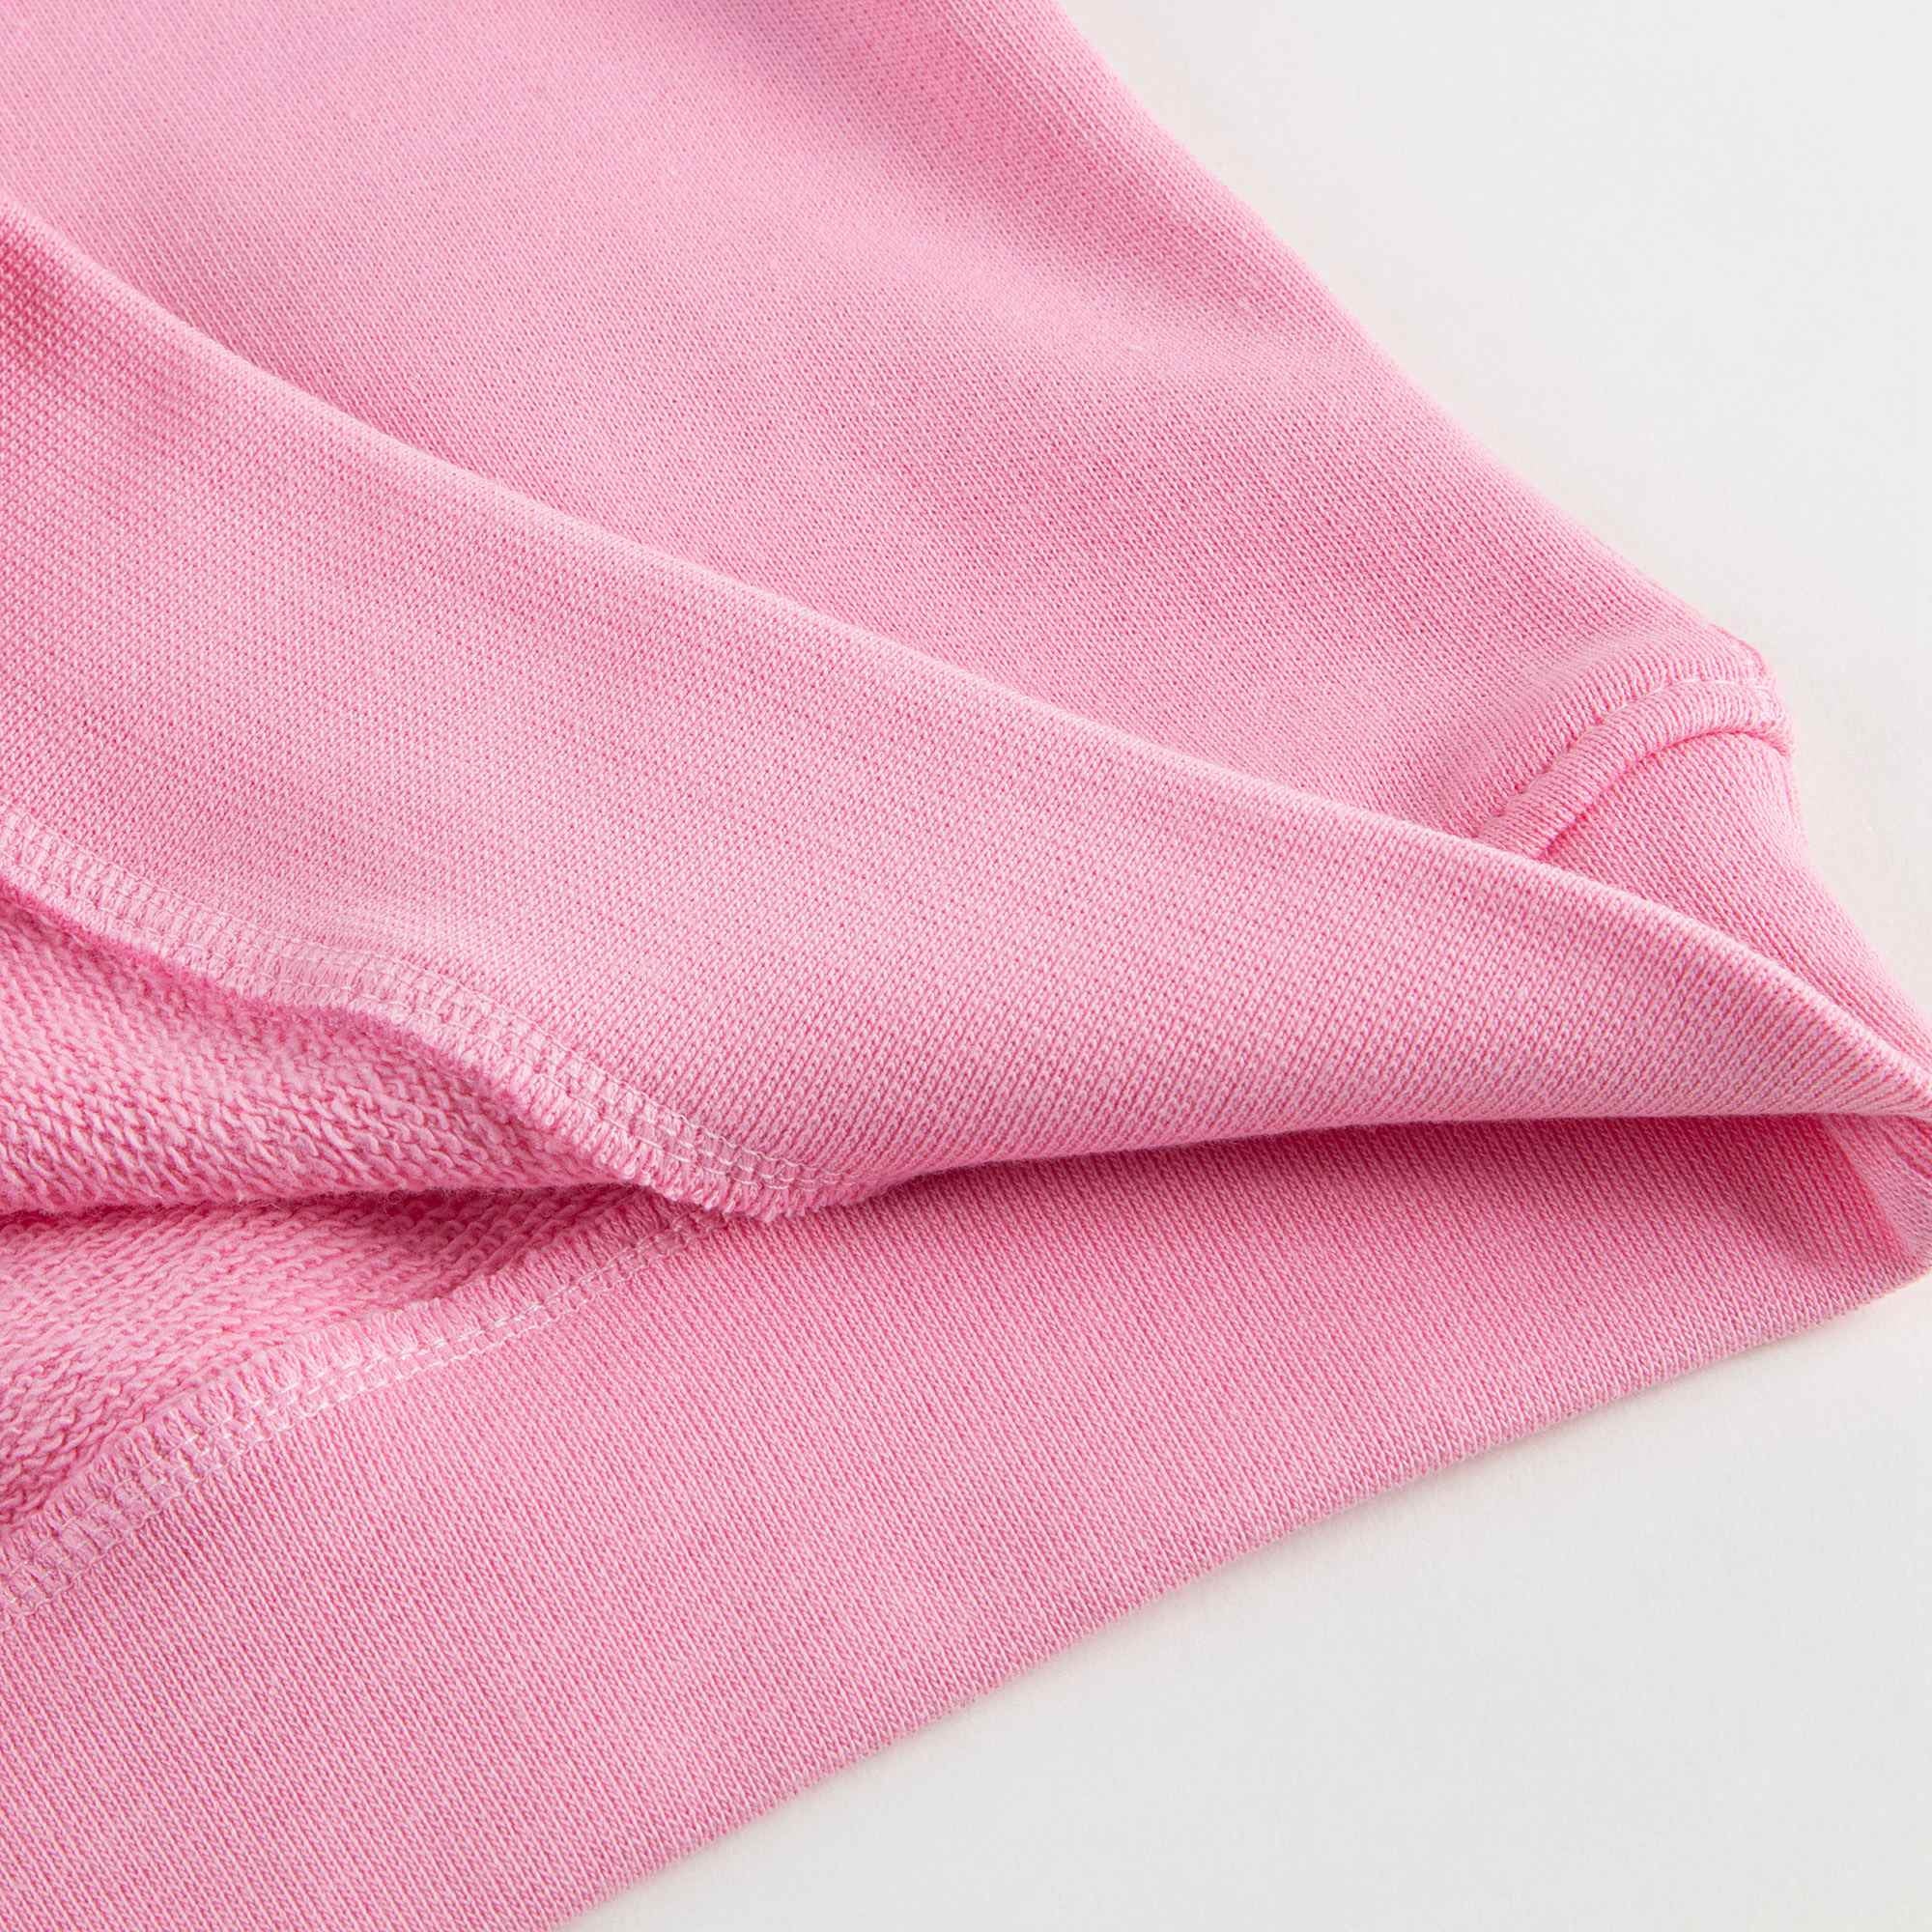 Girls Pink Cotton Logo Sweatshirt